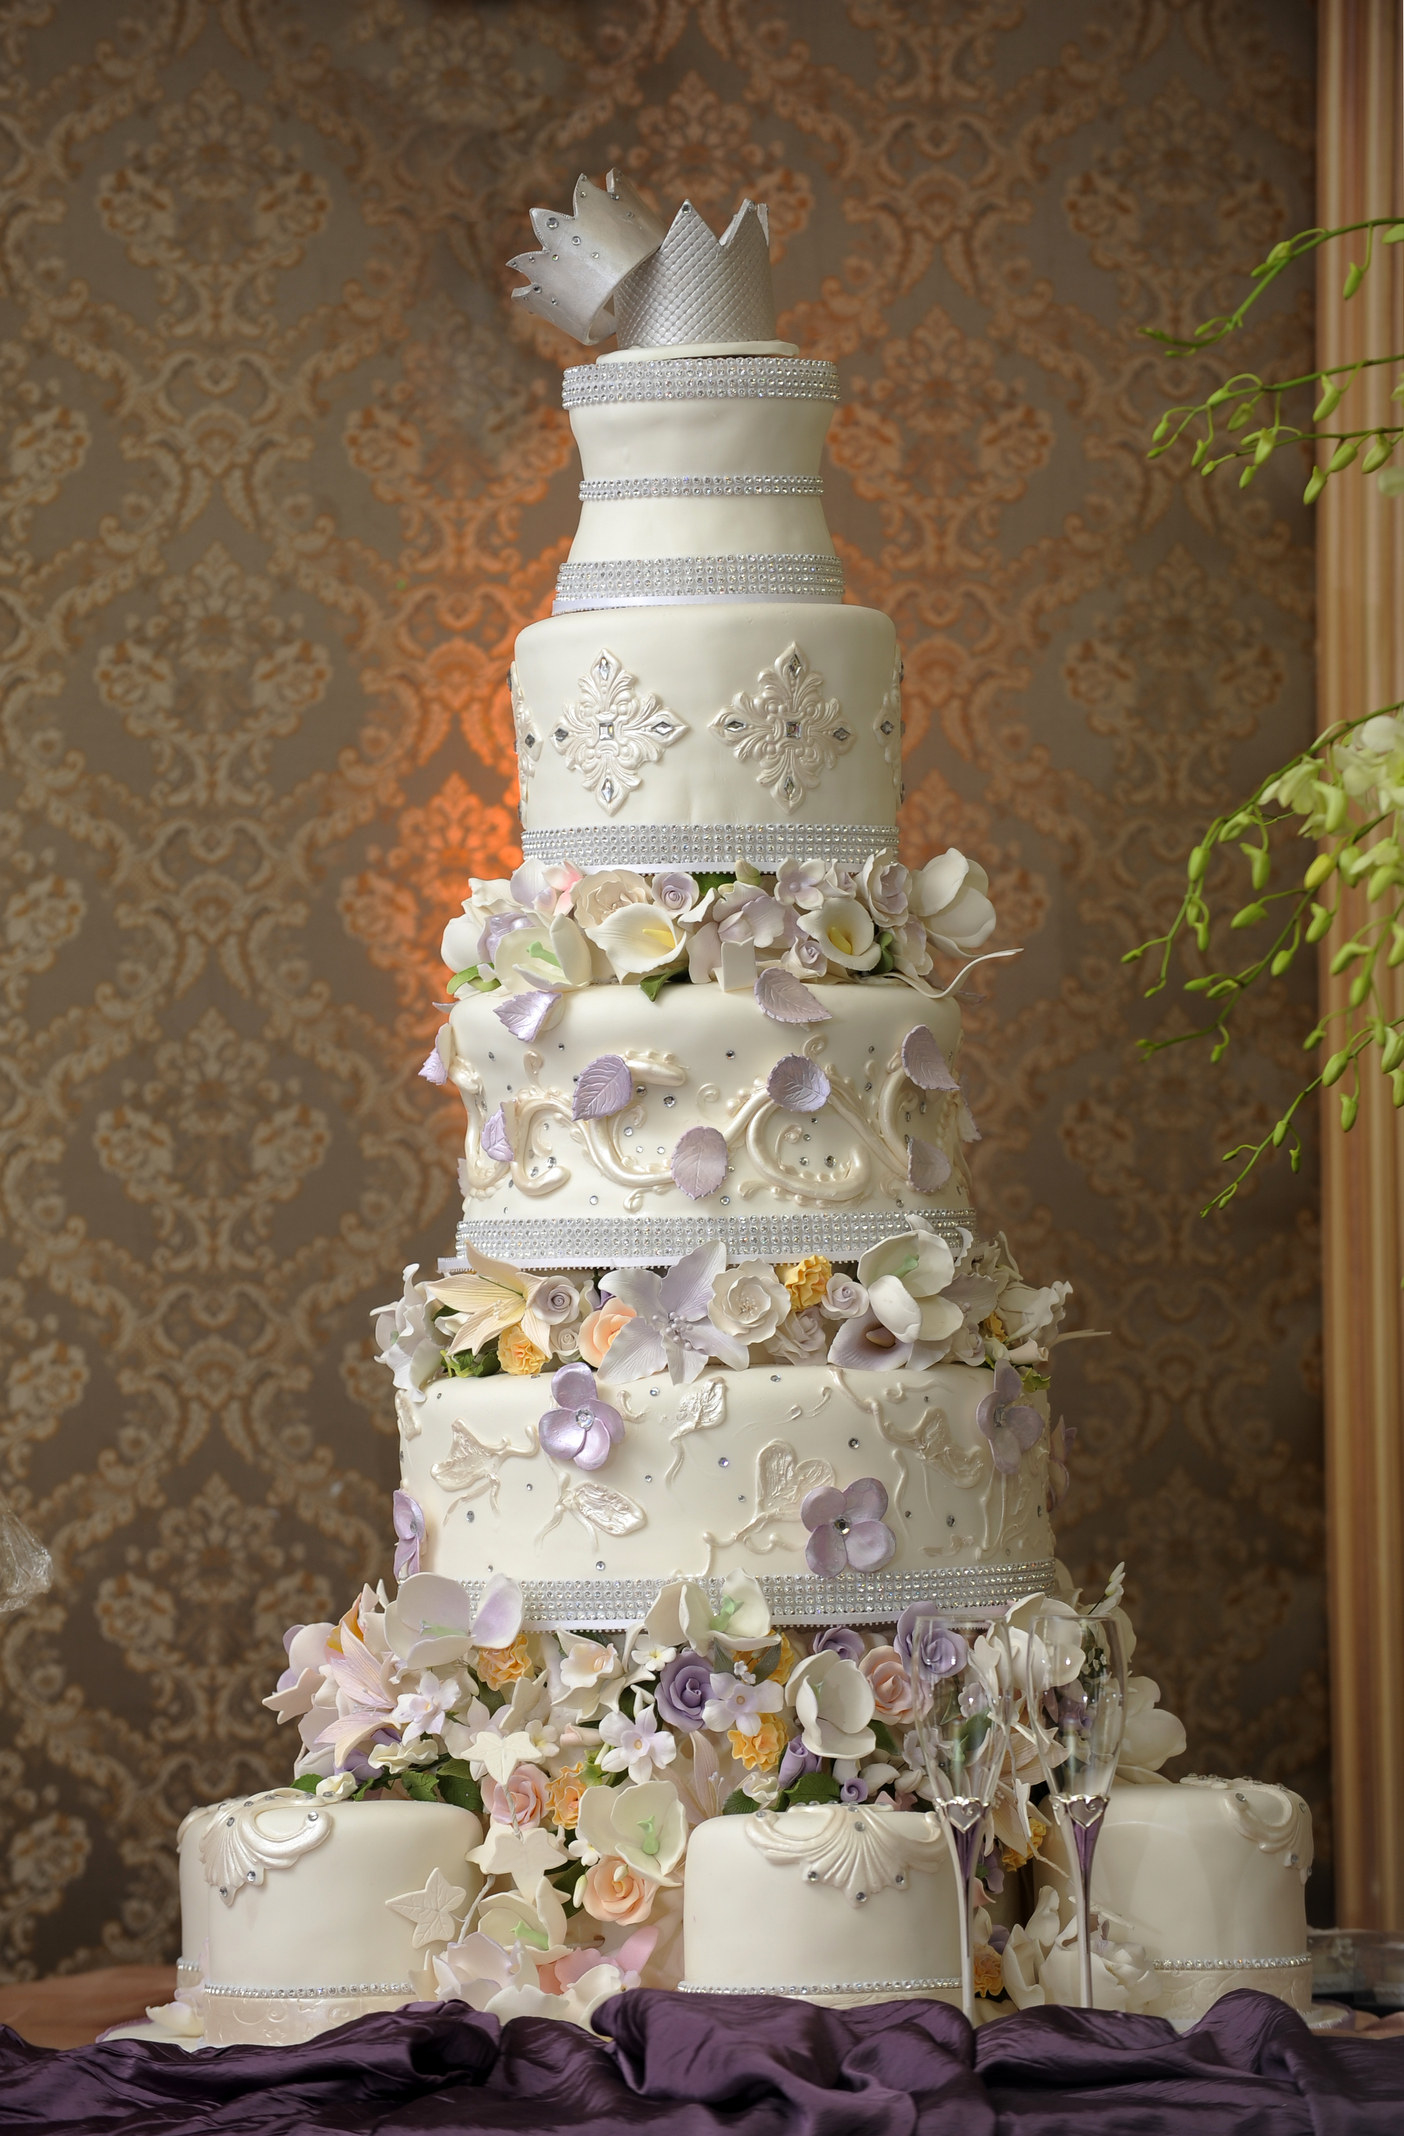 A large wedding cake